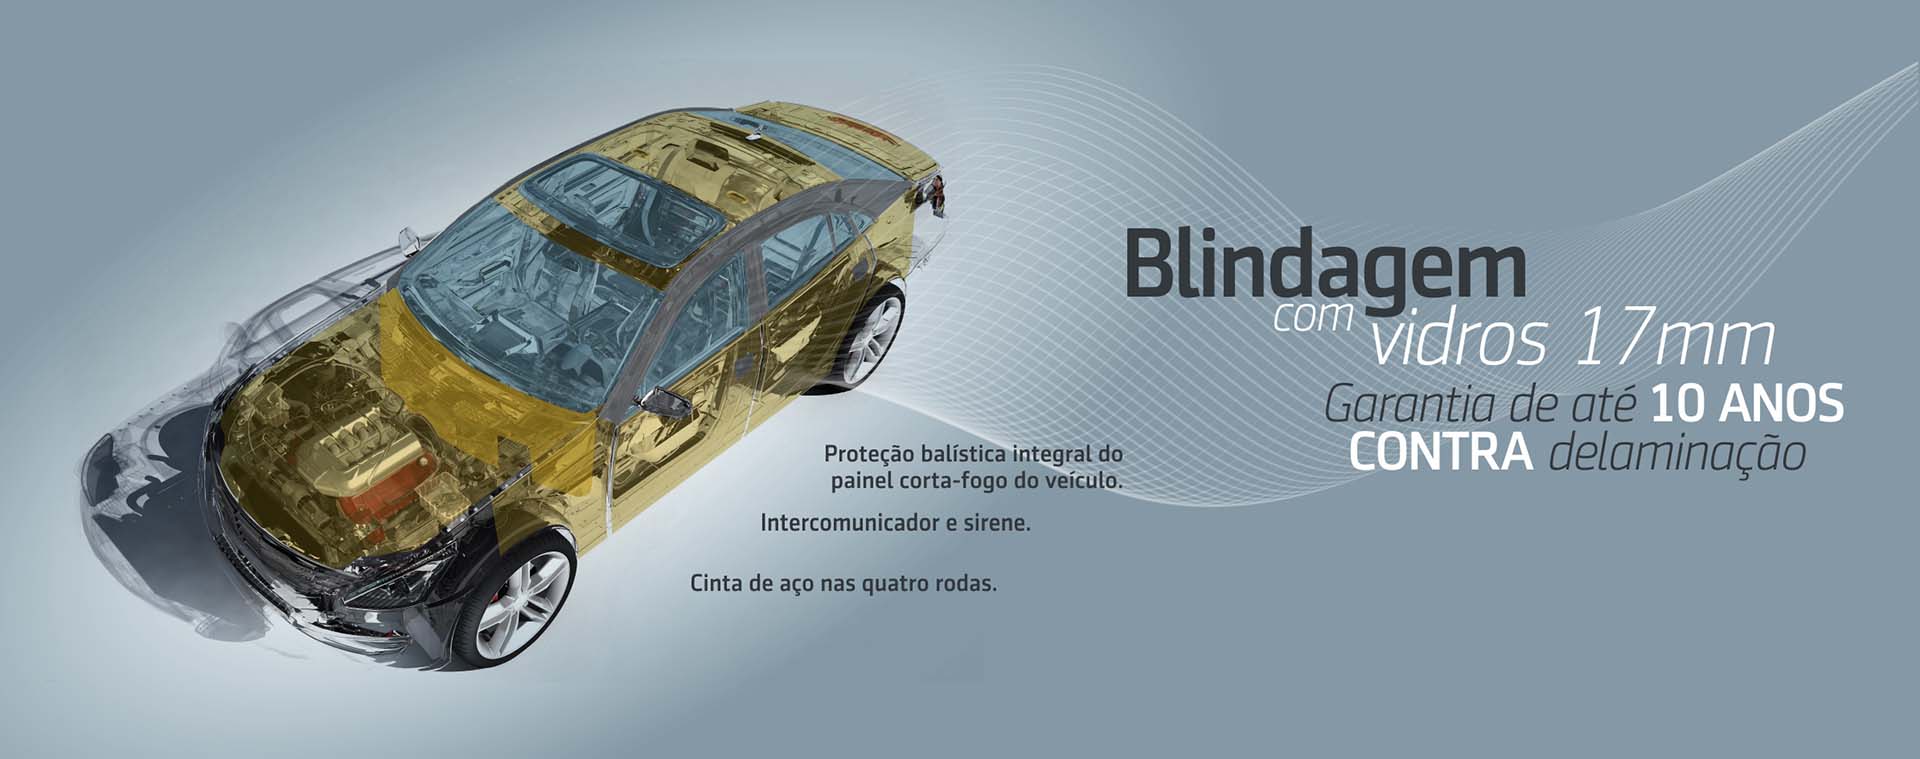 Blindagem de carros: custo, documentação, níveis e muito mais!